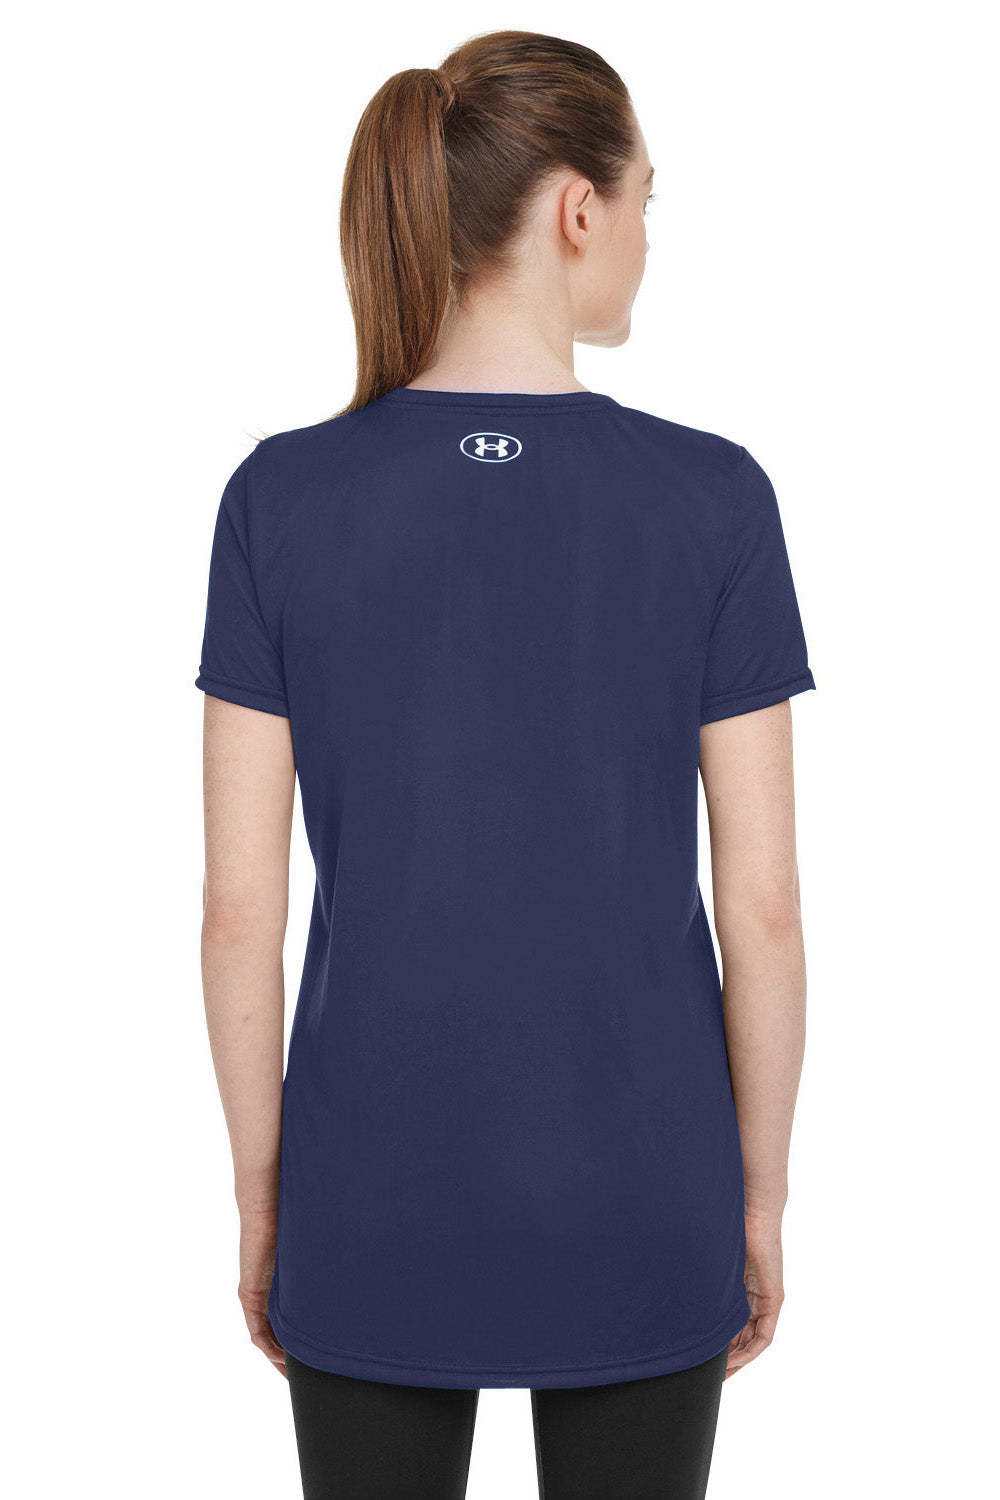 Under Armour 1376847 Womens Team Tech Moisture Wicking Short Sleeve Crewneck T-Shirt Midnight Navy Blue Model Back